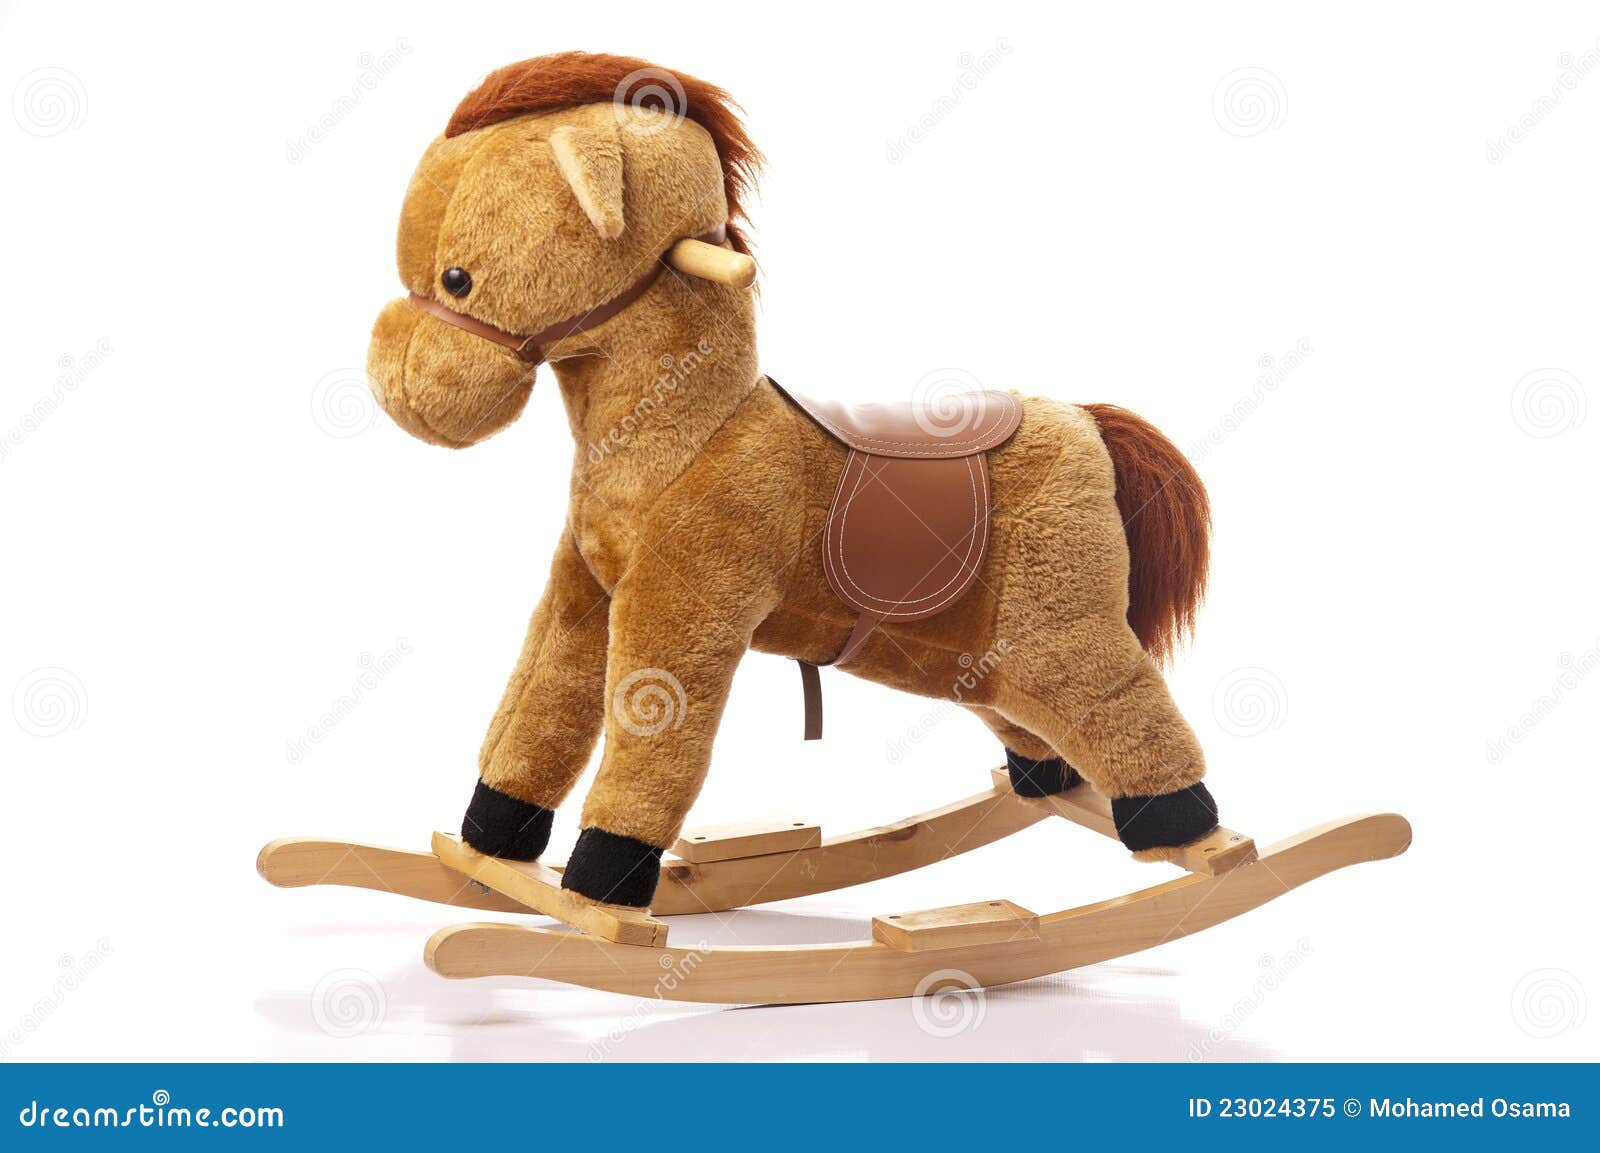 brown rocking horse